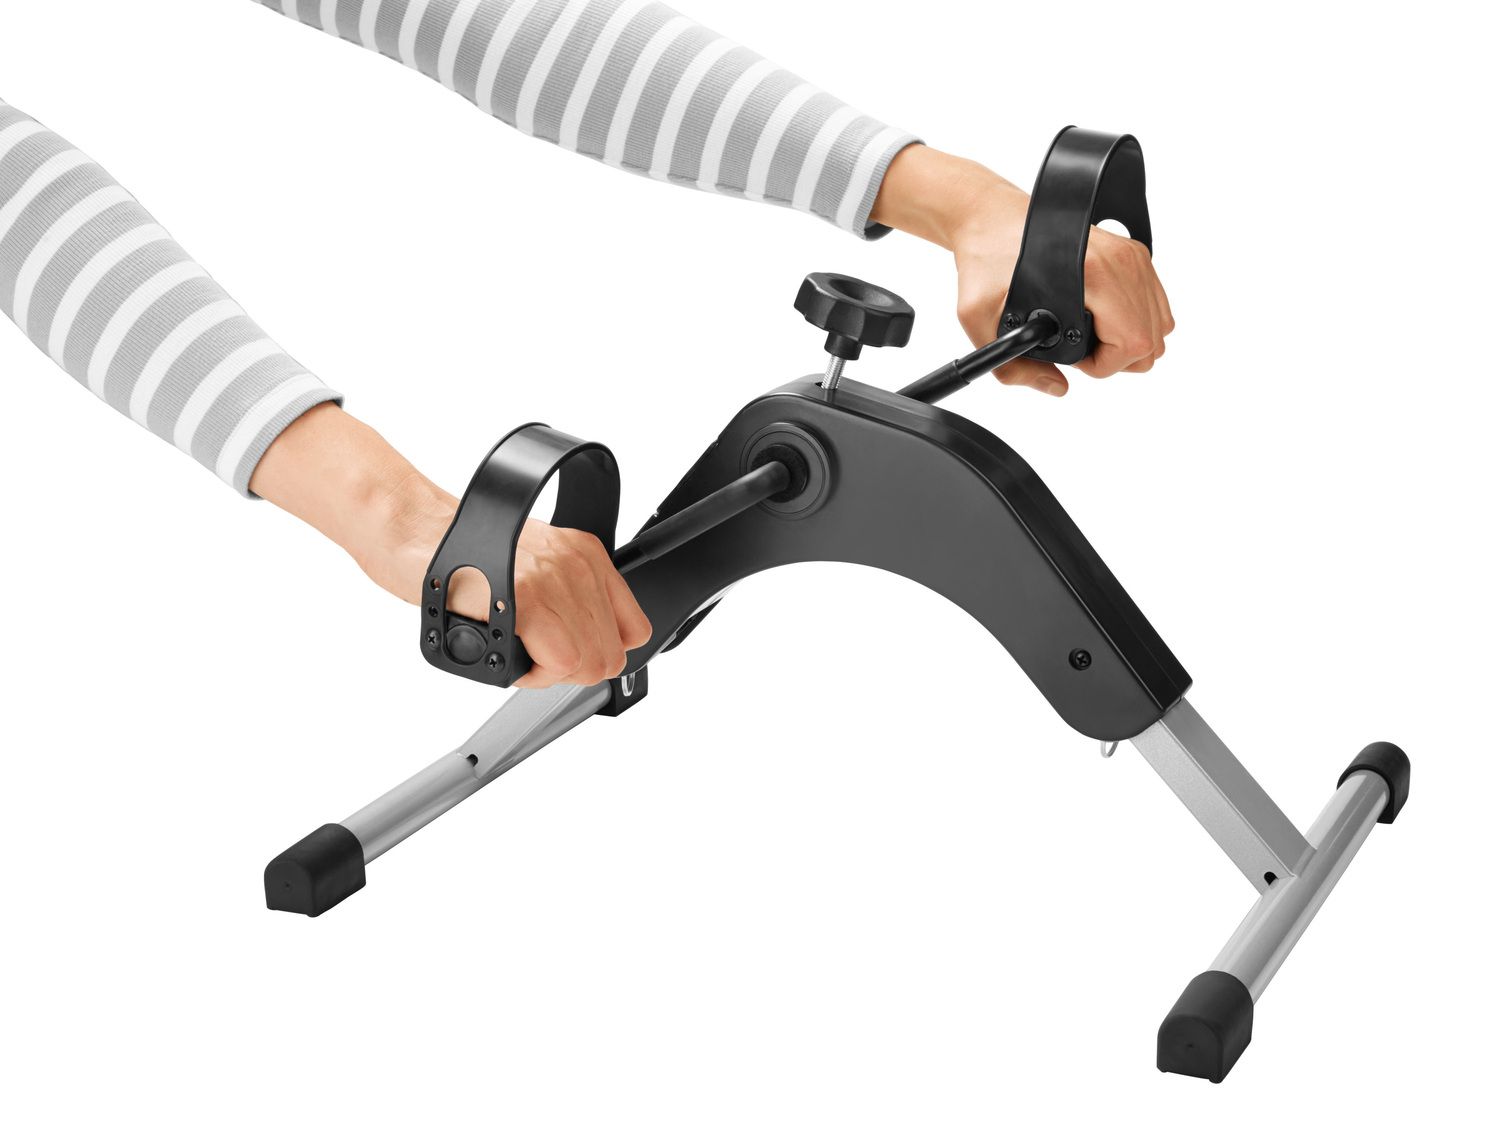 Urządzenie do treningu mięśni ramion i nóg , cena 79,90 PLN 
- bateria w zestawie
- ...